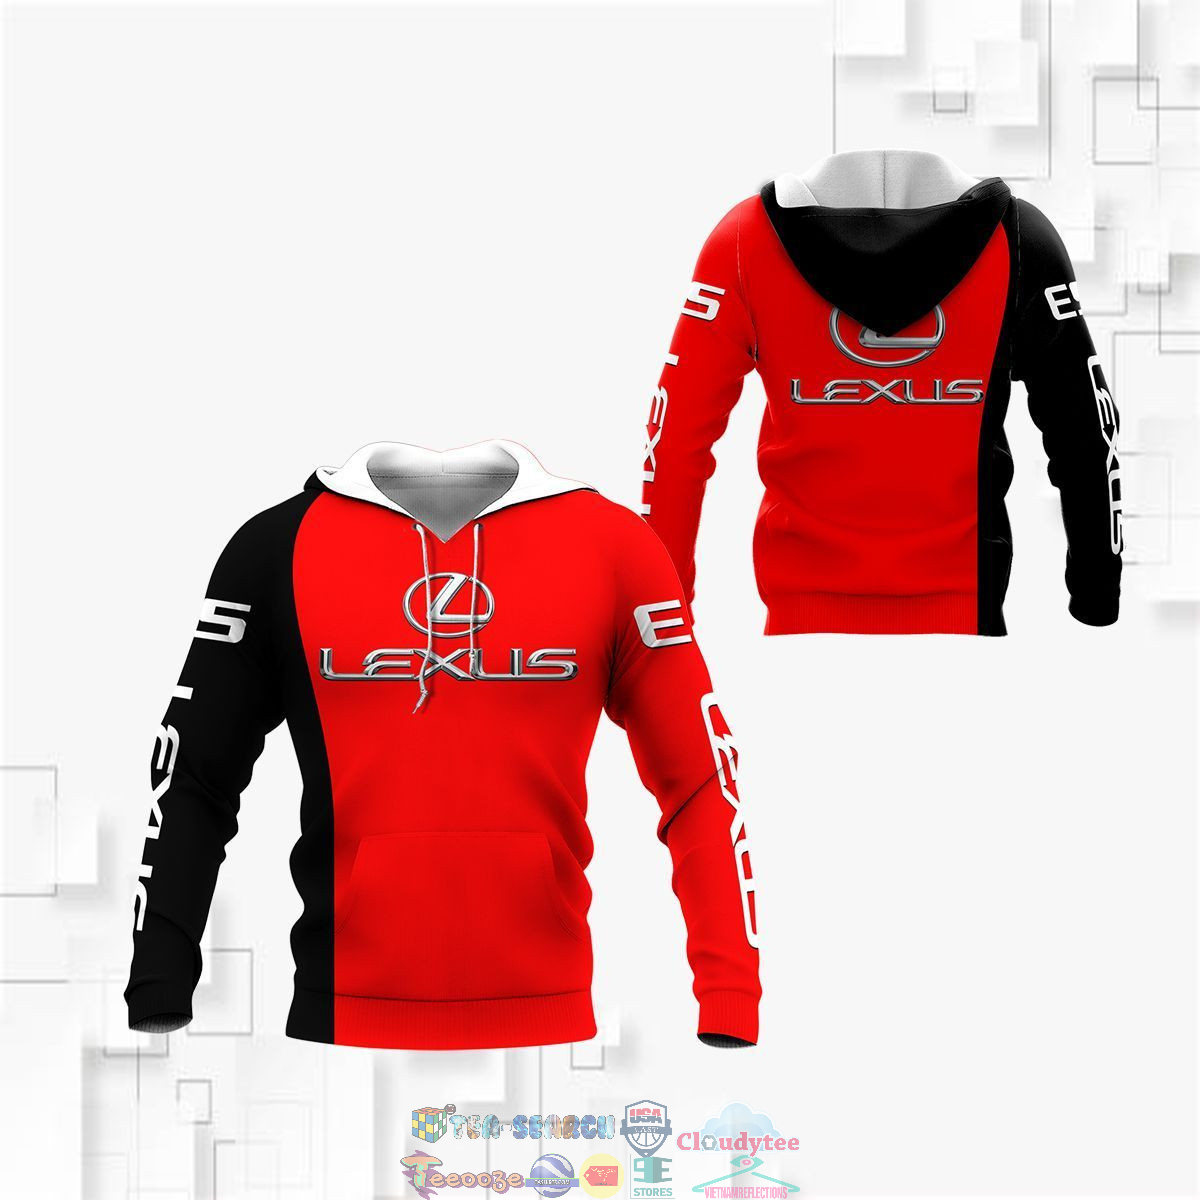 3tzXIUsR-TH110822-22xxxLexus-ver-6-3D-hoodie-and-t-shirt3.jpg